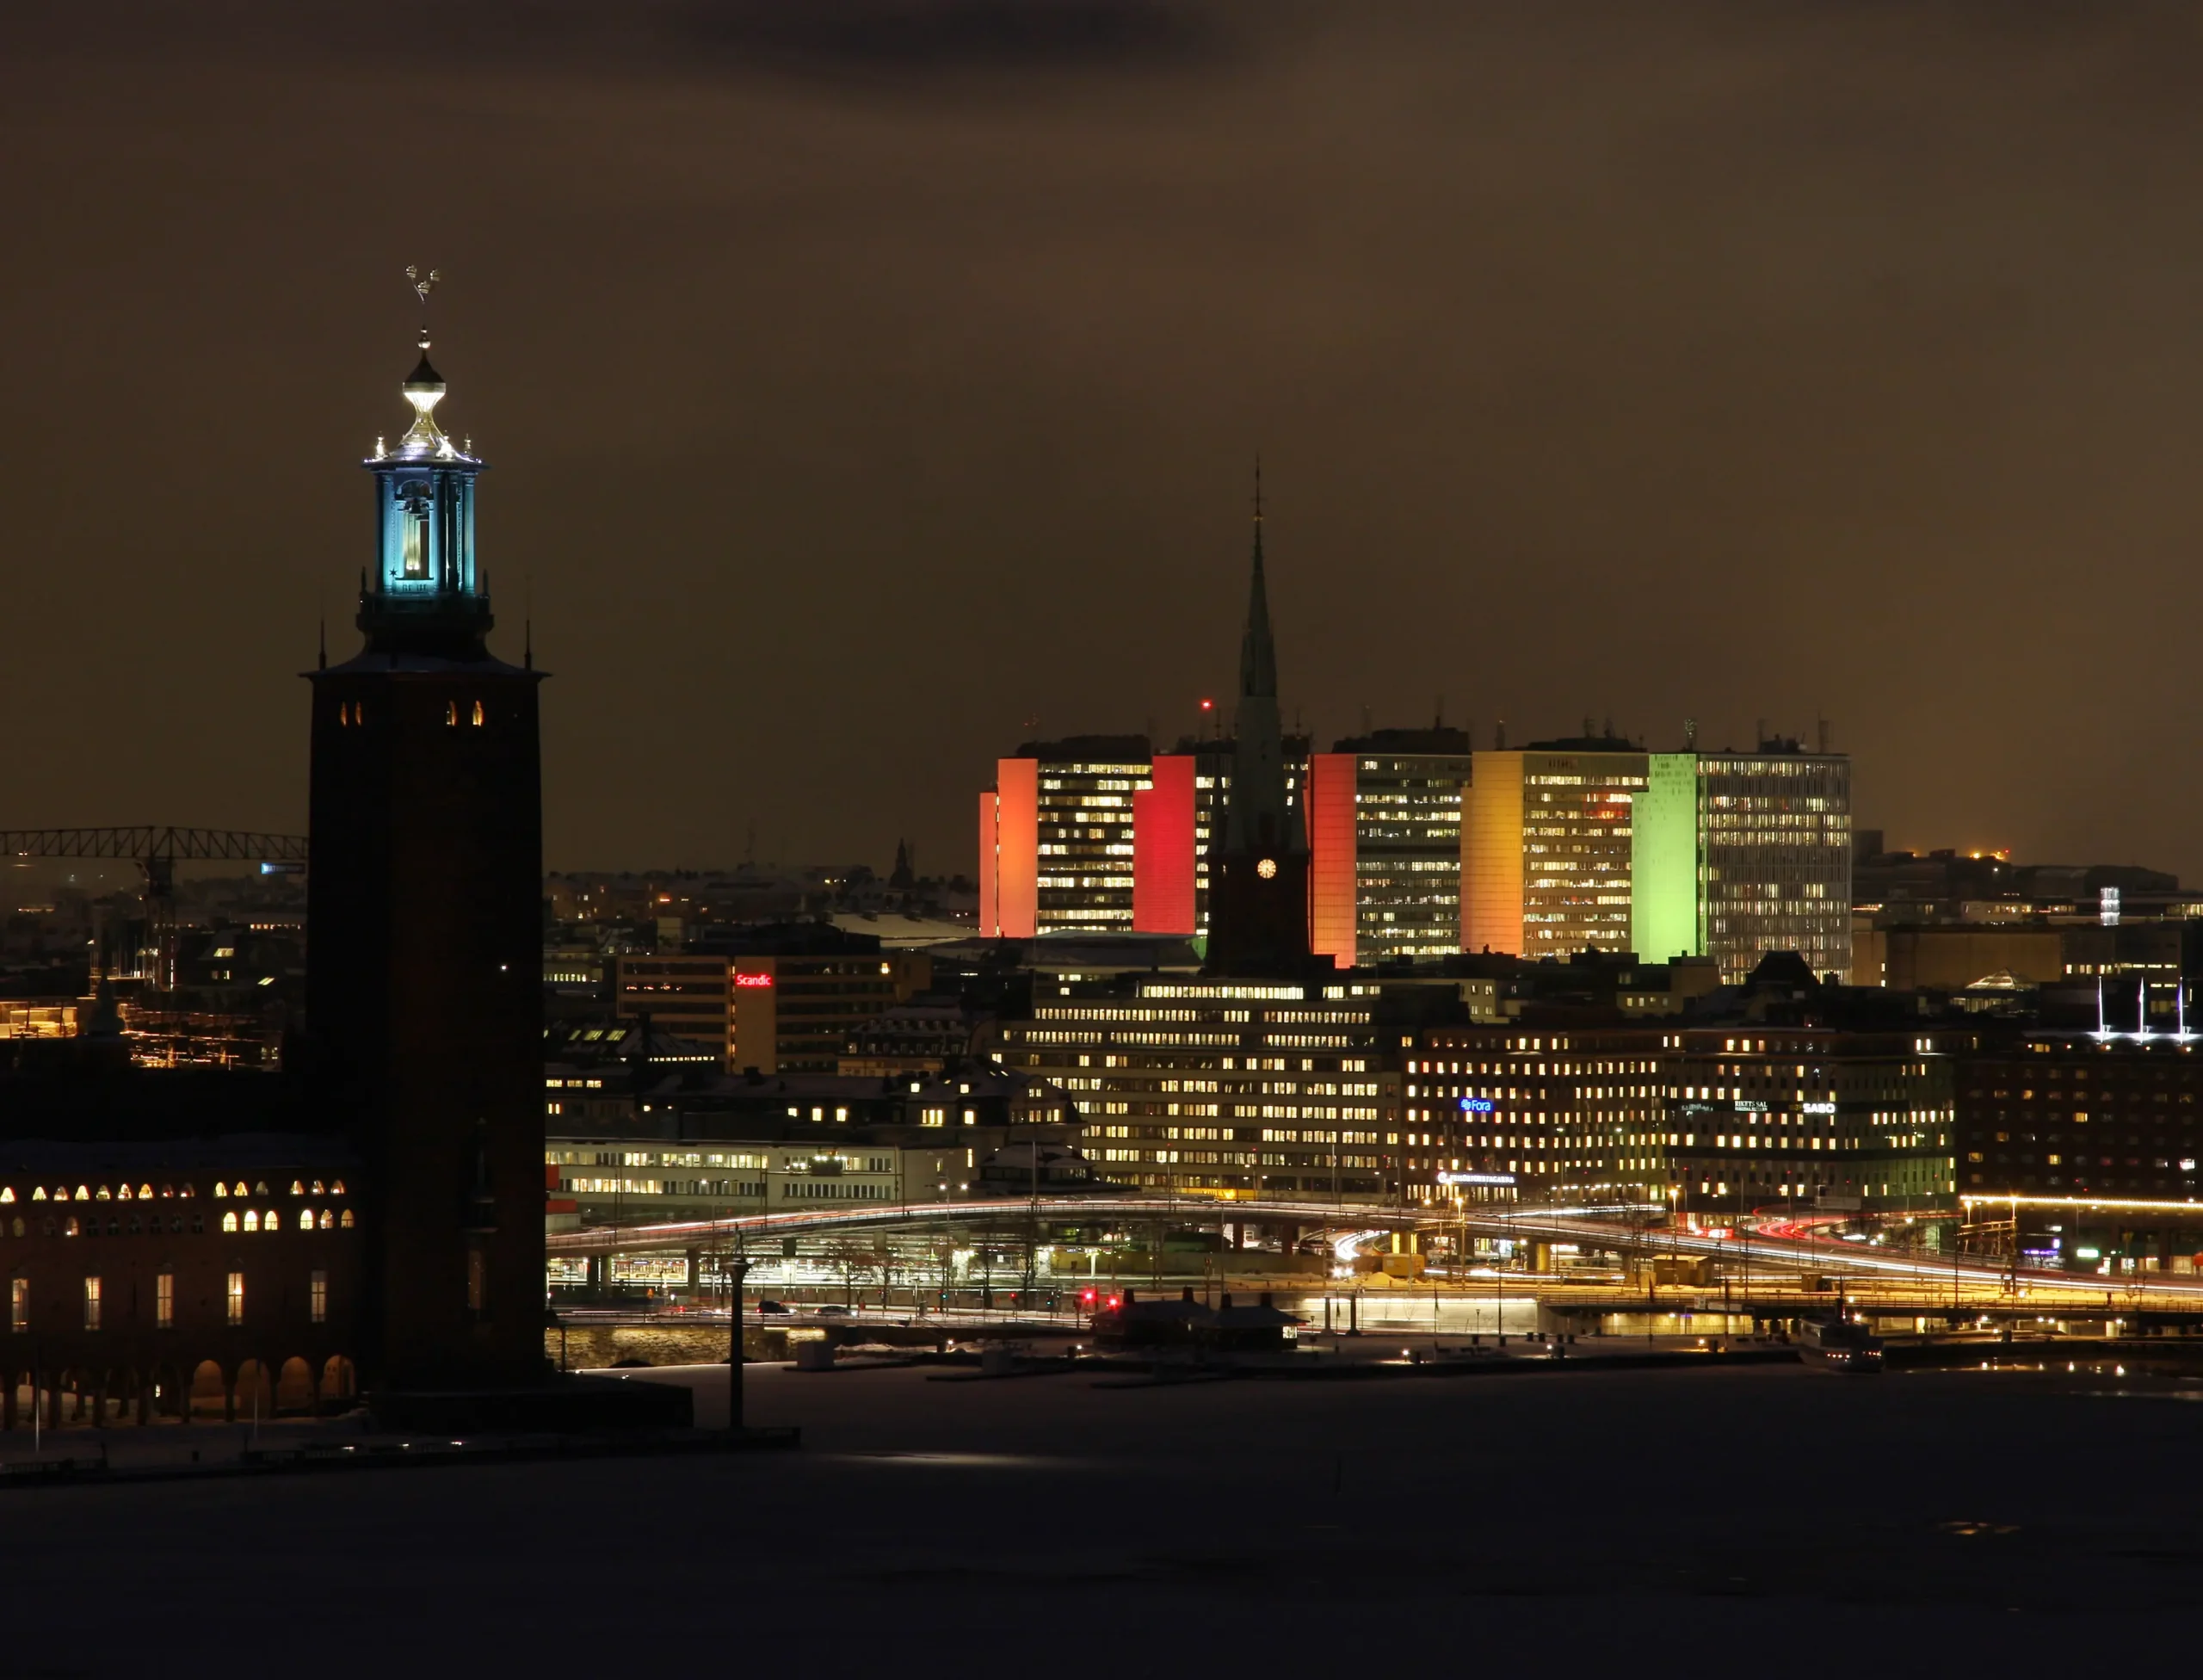 Hötorgsskraporna. Illuminationen av Stockholms framstående landmärke gavs genom Laddat Ljus idé och genomfördes av oss första gången vid sekelskiftet.